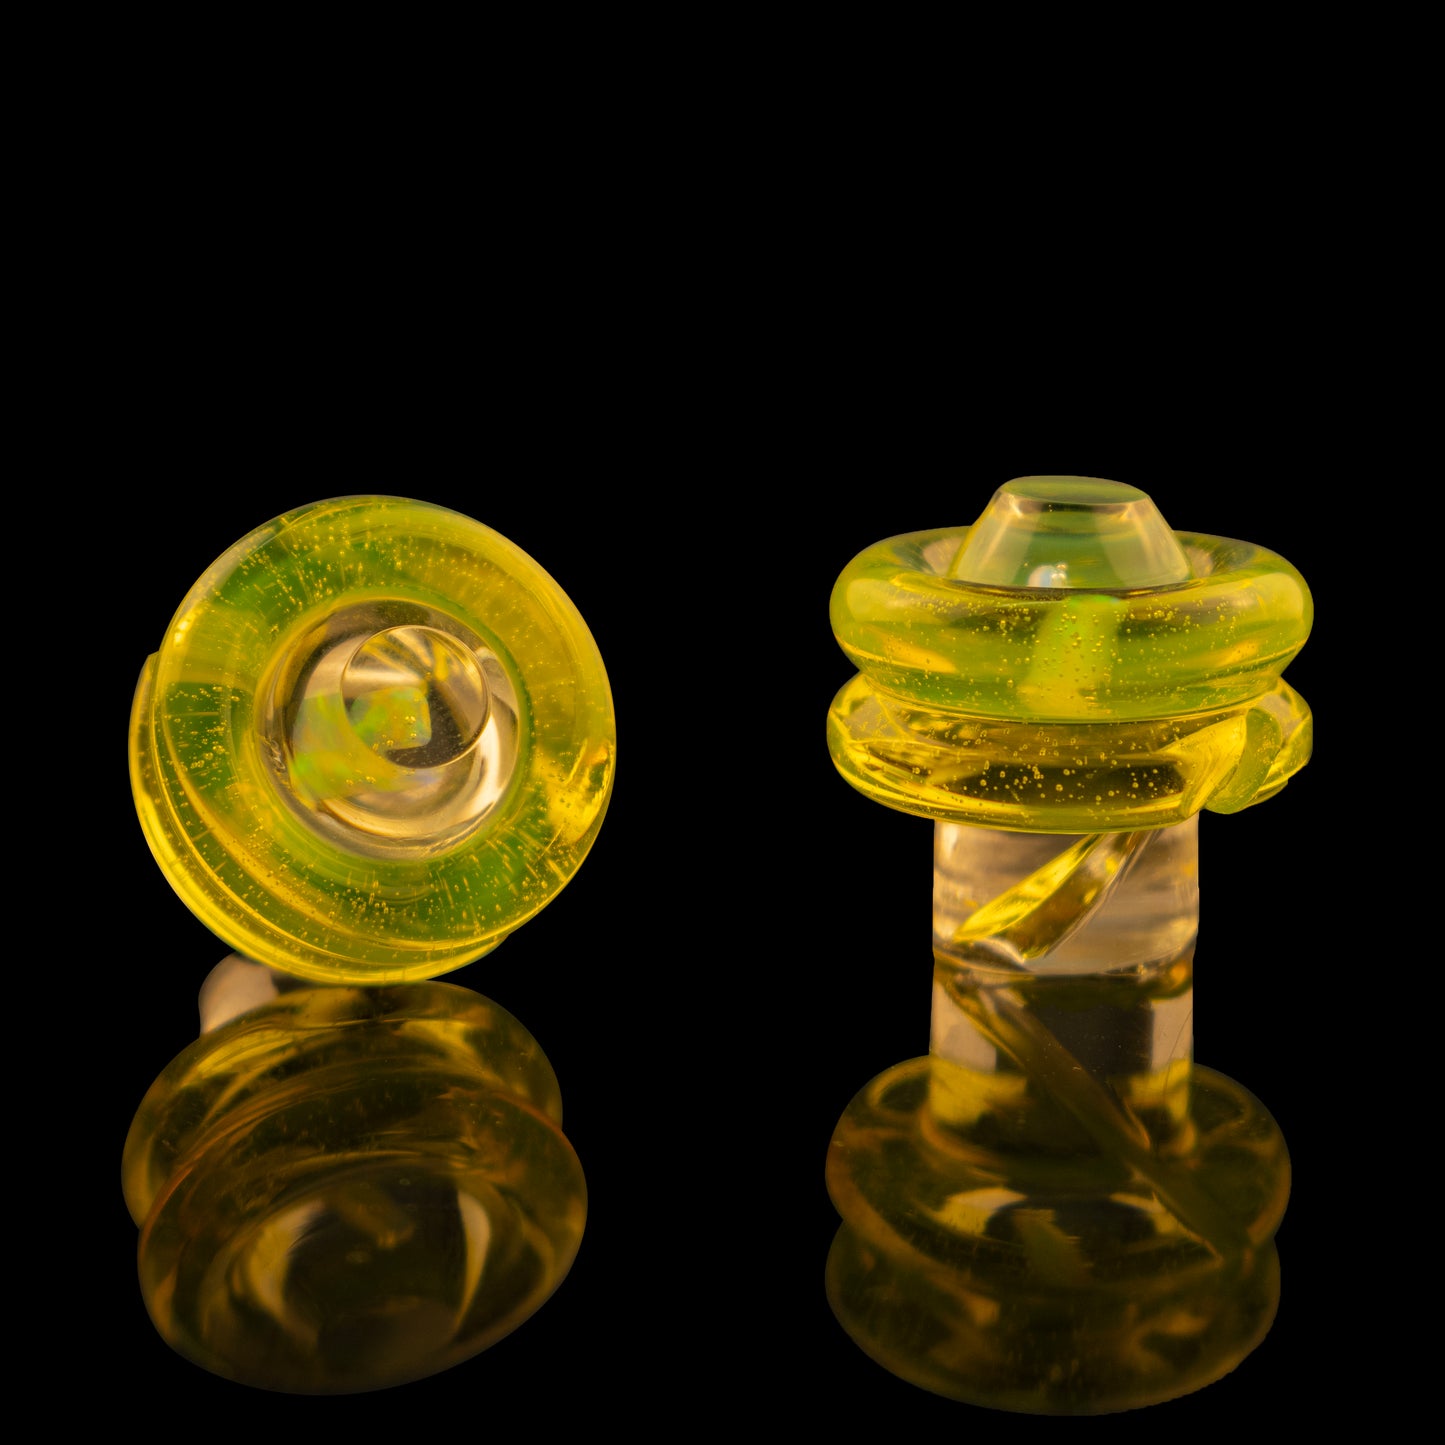 3DXL Inset Opal Rockulus in Slime